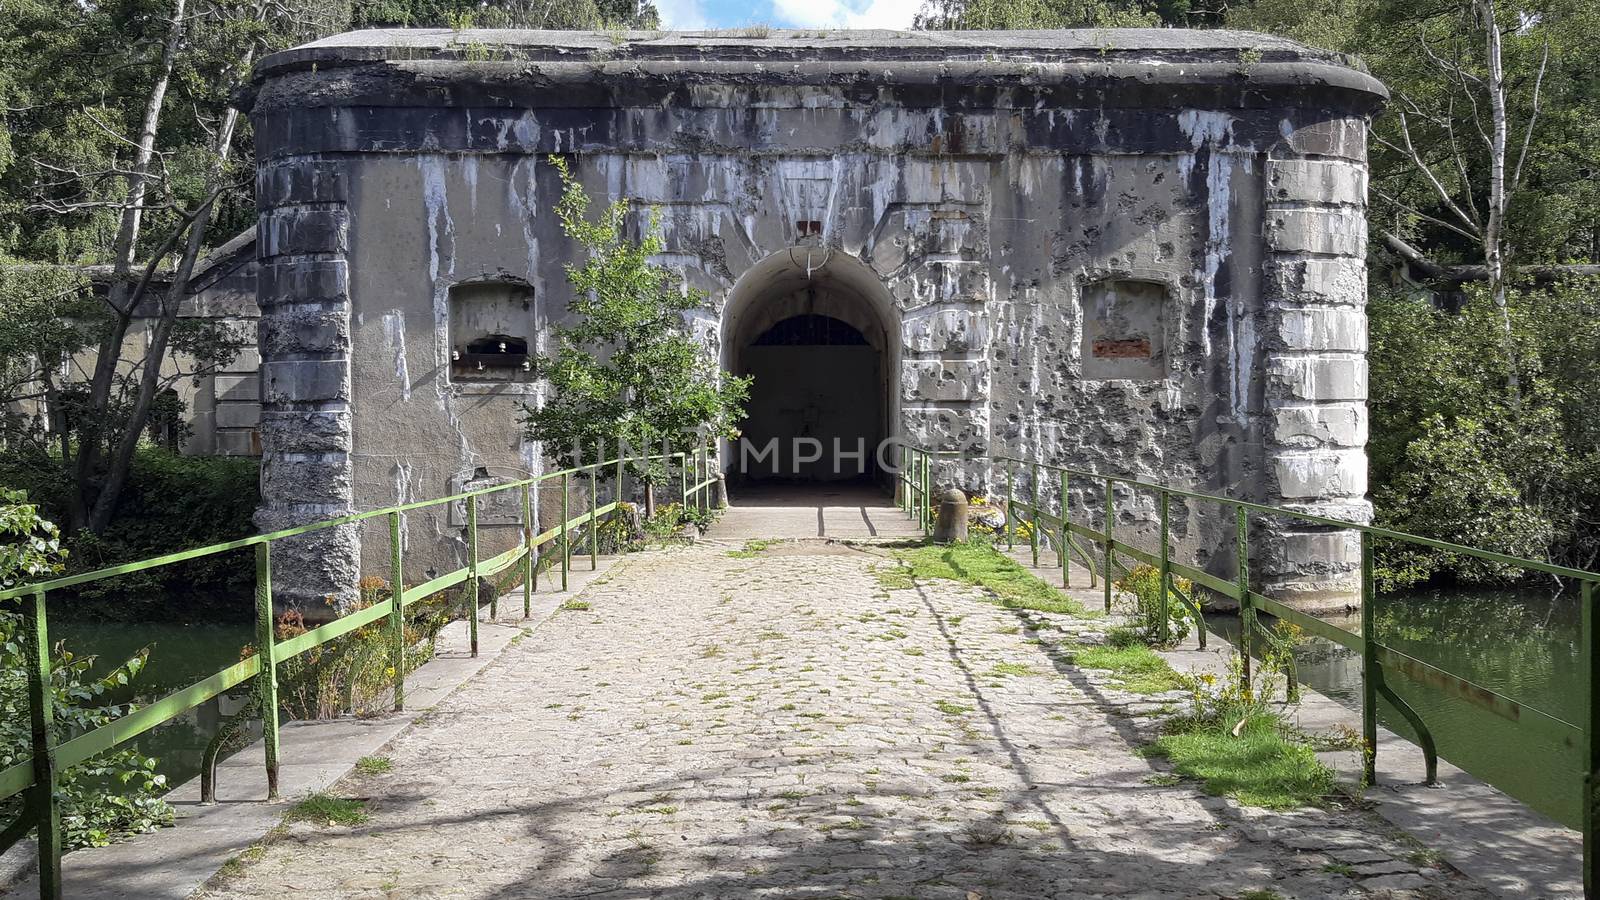 Kapellen, Belgium, July 2020: Entrance of Fort Ertbrand, part of fortengorden and antitank gracht around Antwerp